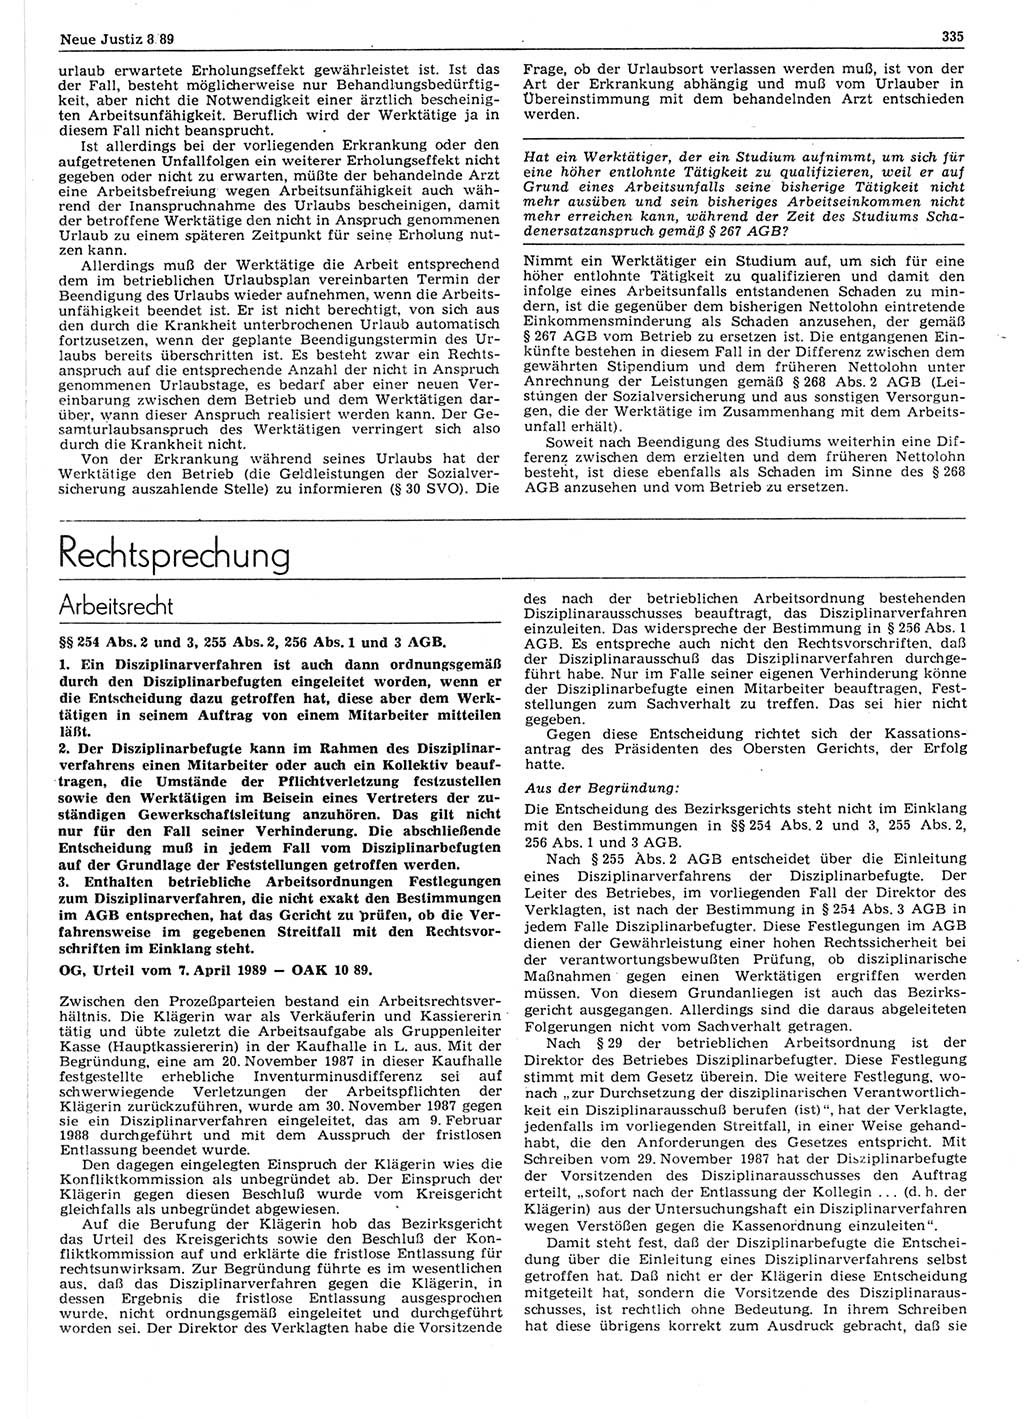 Neue Justiz (NJ), Zeitschrift für sozialistisches Recht und Gesetzlichkeit [Deutsche Demokratische Republik (DDR)], 43. Jahrgang 1989, Seite 335 (NJ DDR 1989, S. 335)